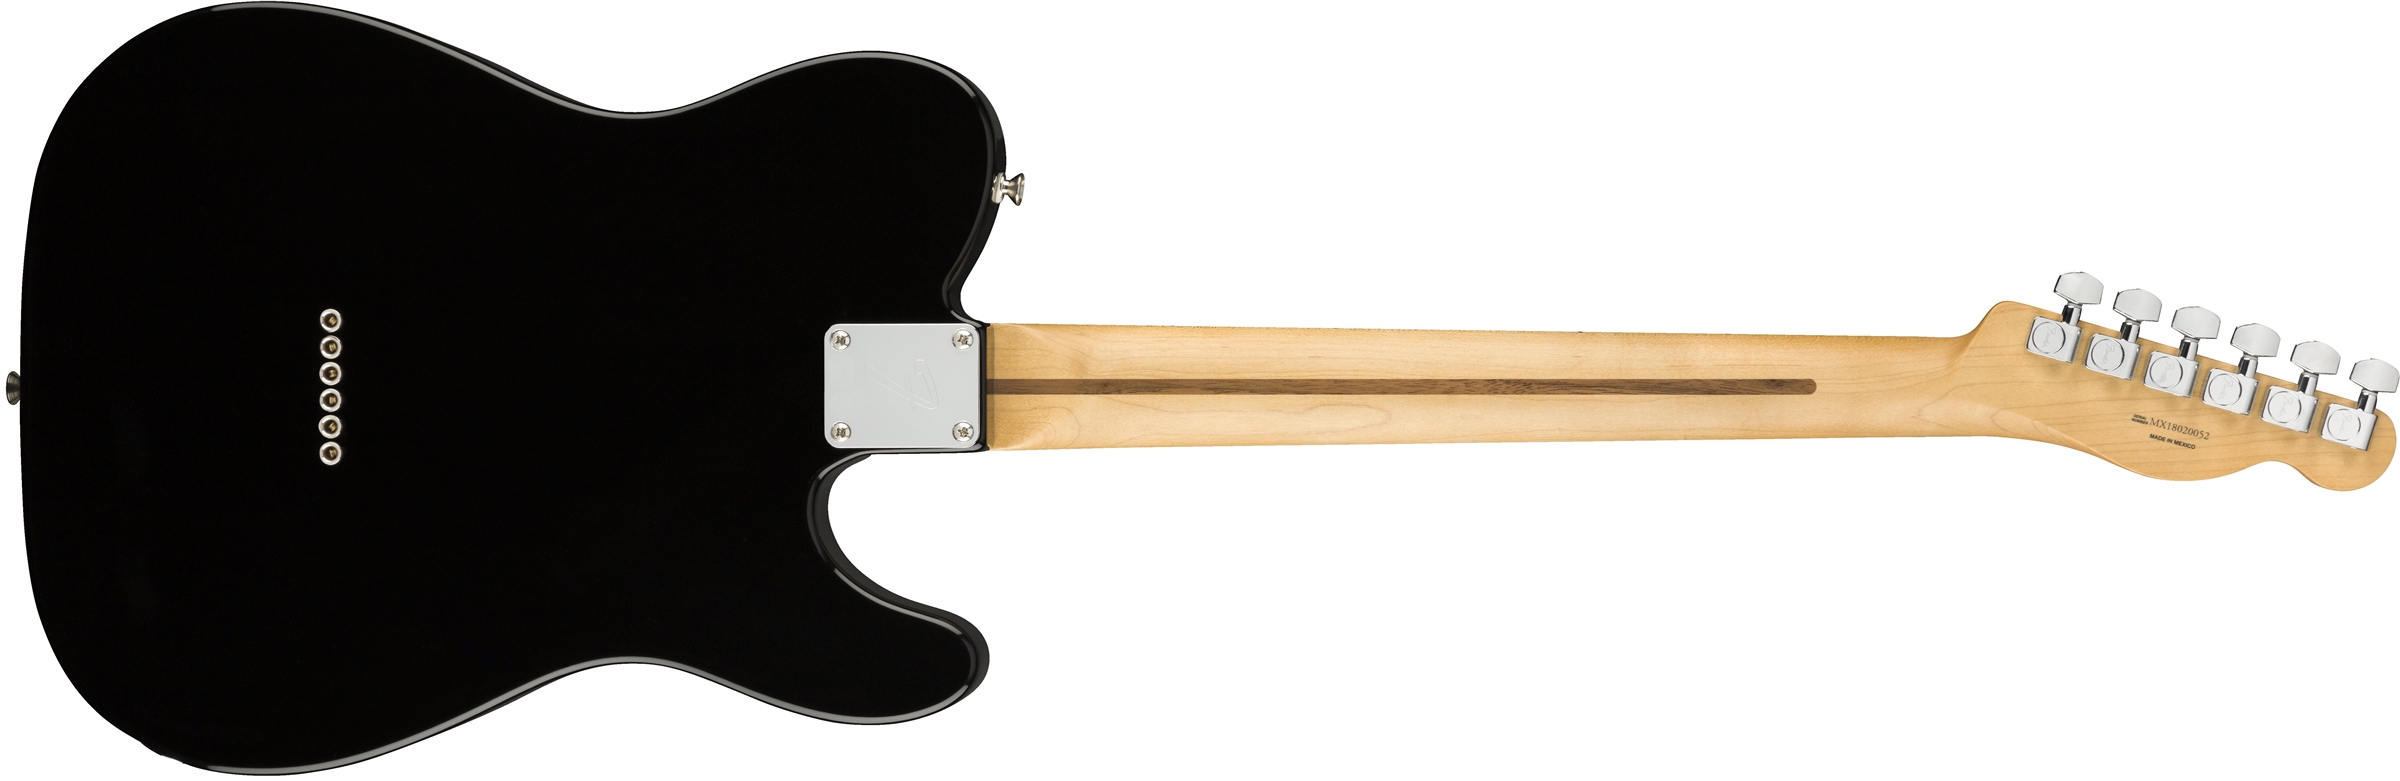 Fender Tele Player Lh Gaucher Mex Ss Mn - Black - E-Gitarre für Linkshänder - Variation 1